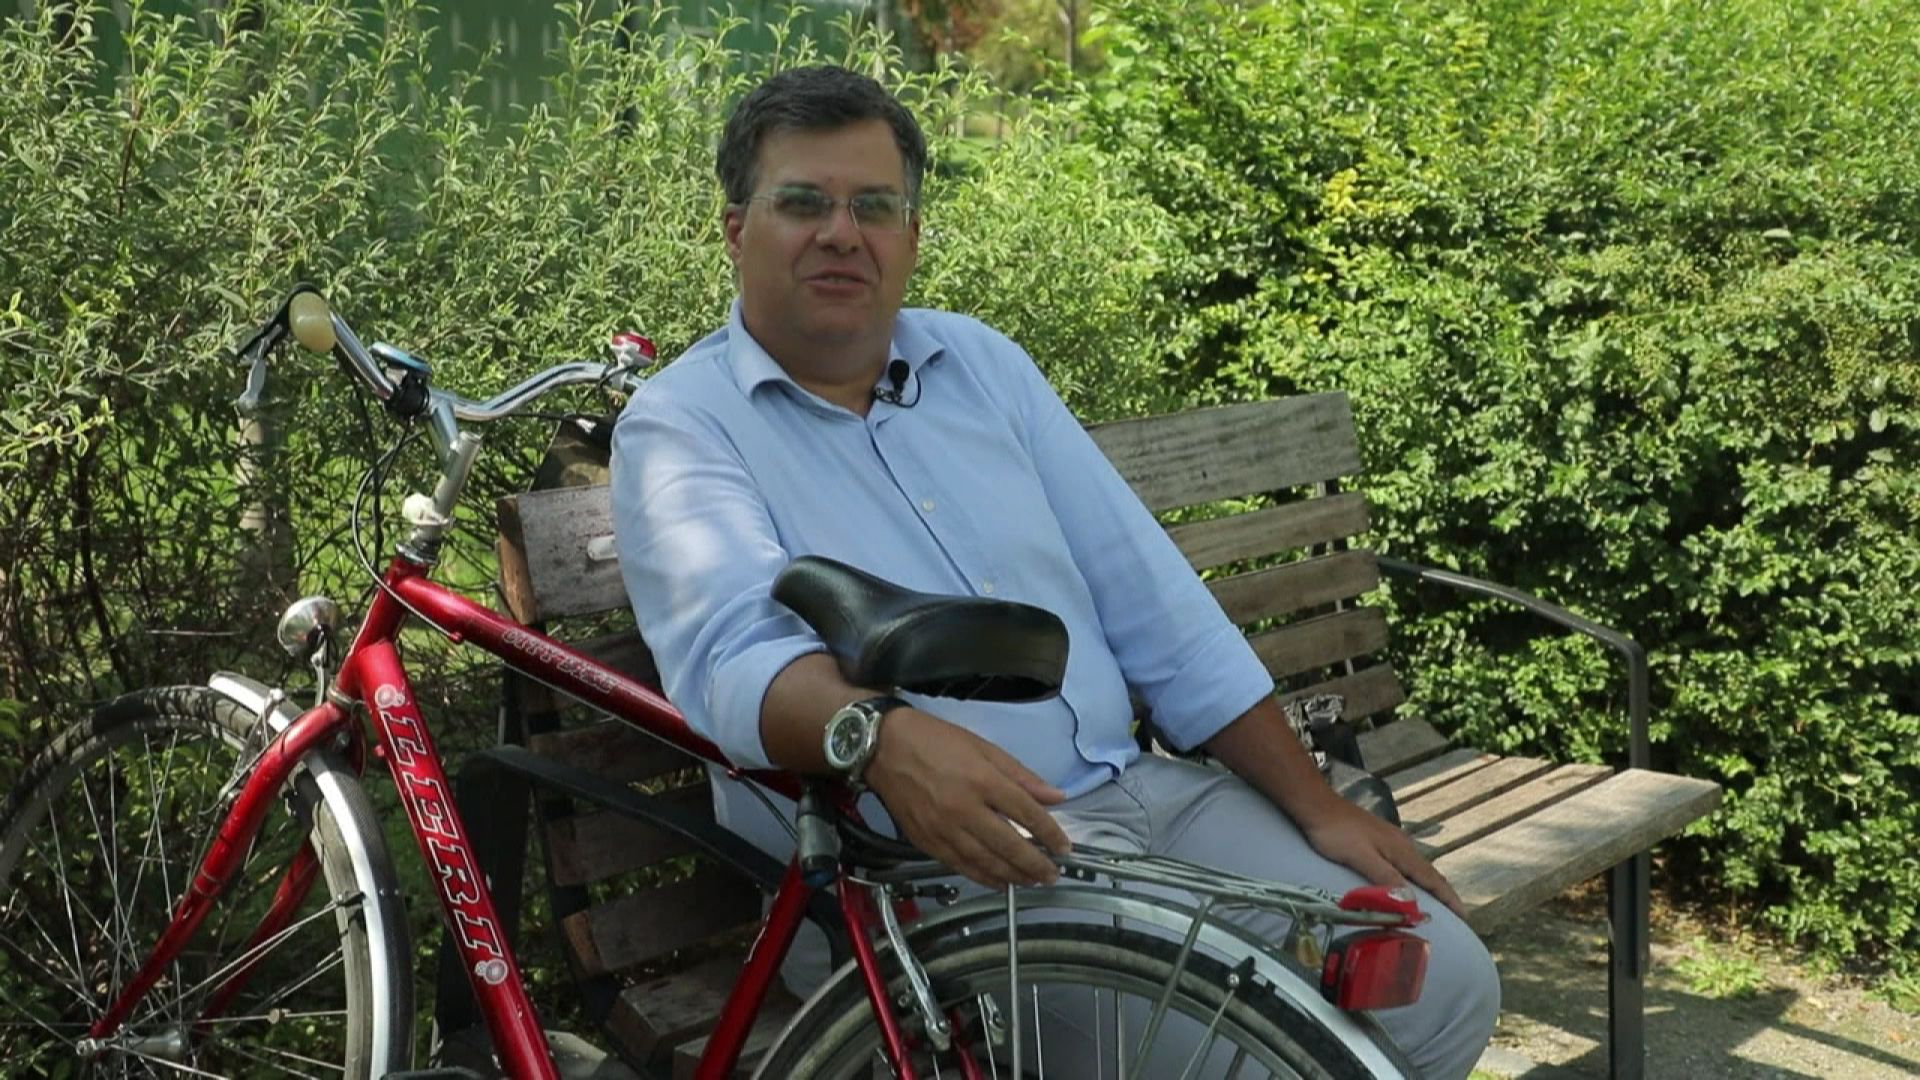 Un cycliste habitant de Milan : "La situation commence à s’améliorer, milan commence à devenir une ville incroyablement verte."